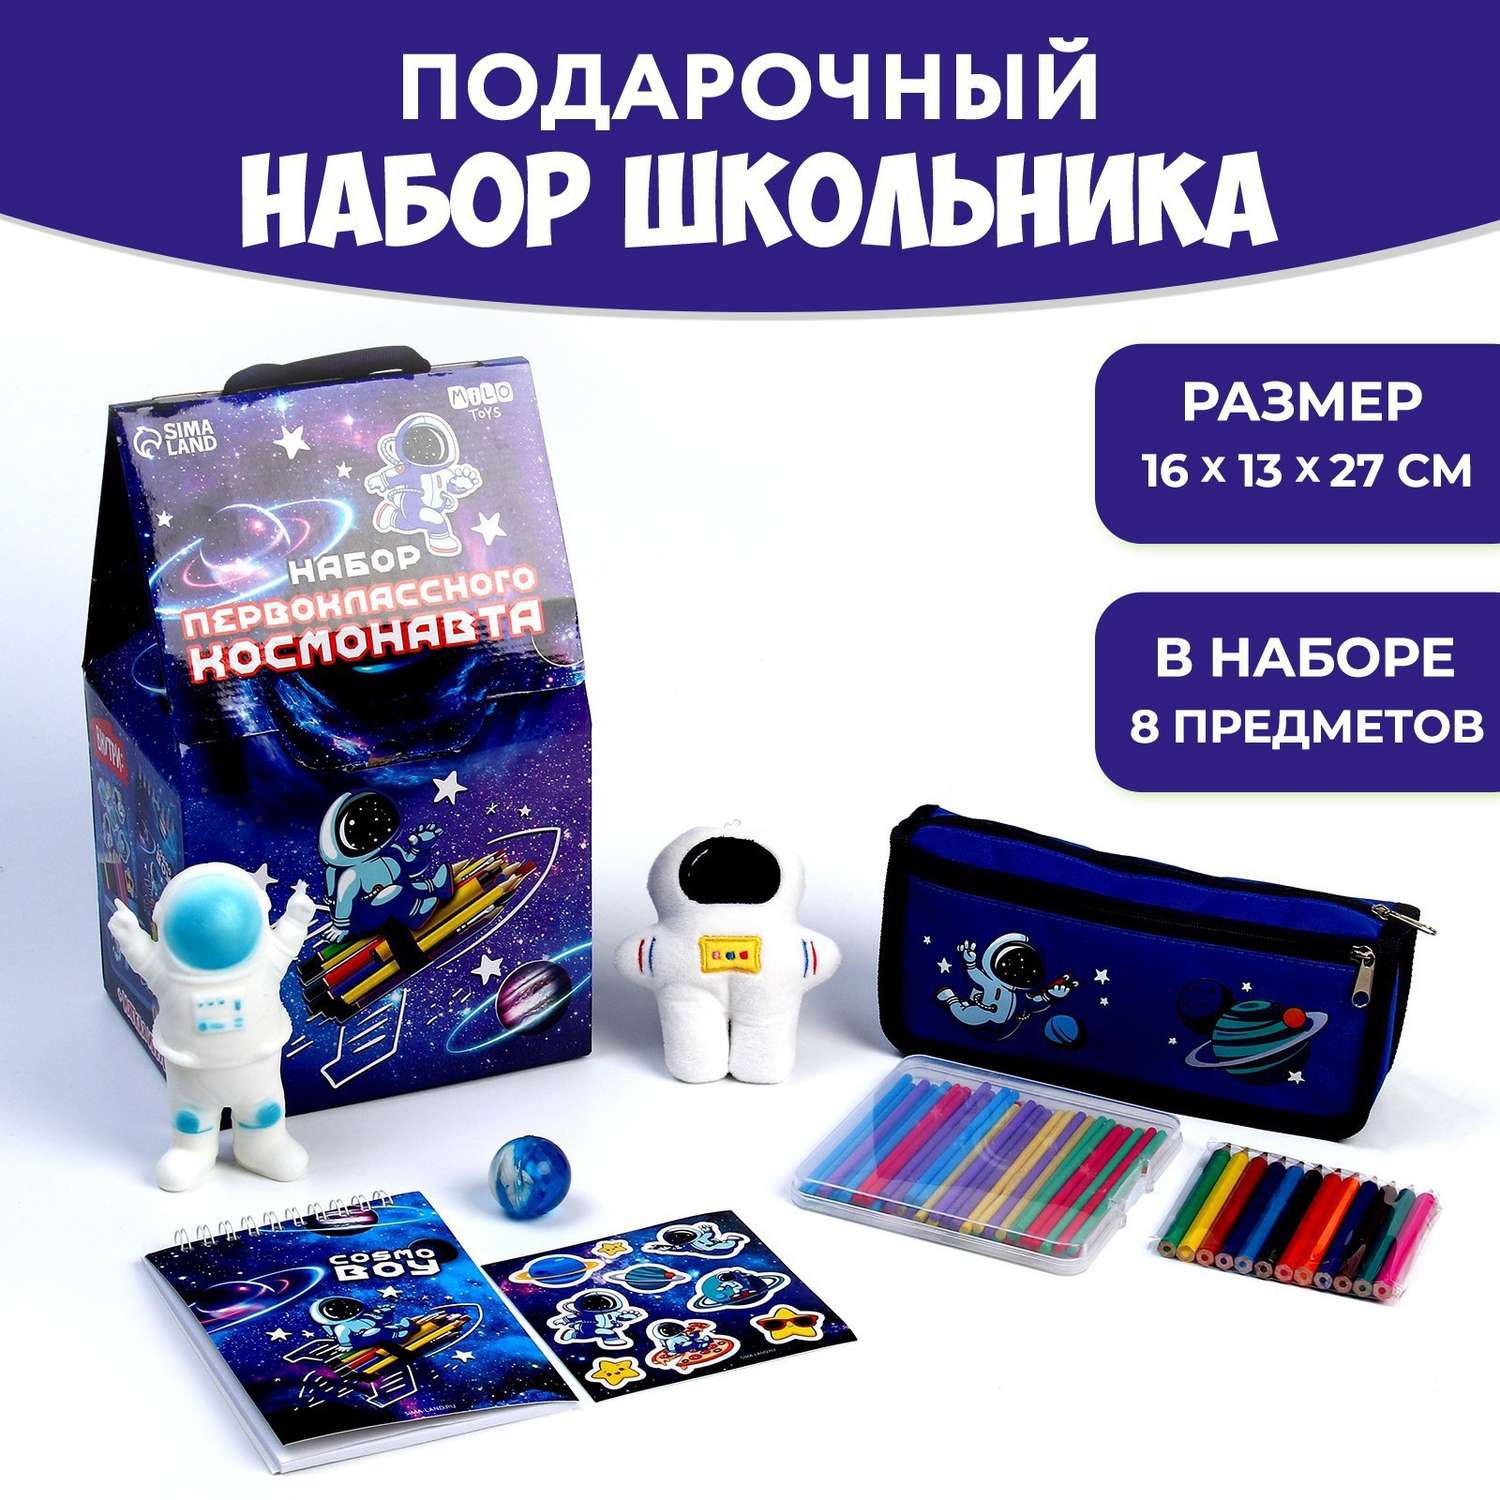 Подарочный набор школьника Milo Toys с мягкой игрушкой «Космонавт» 8 предметов - фото 1